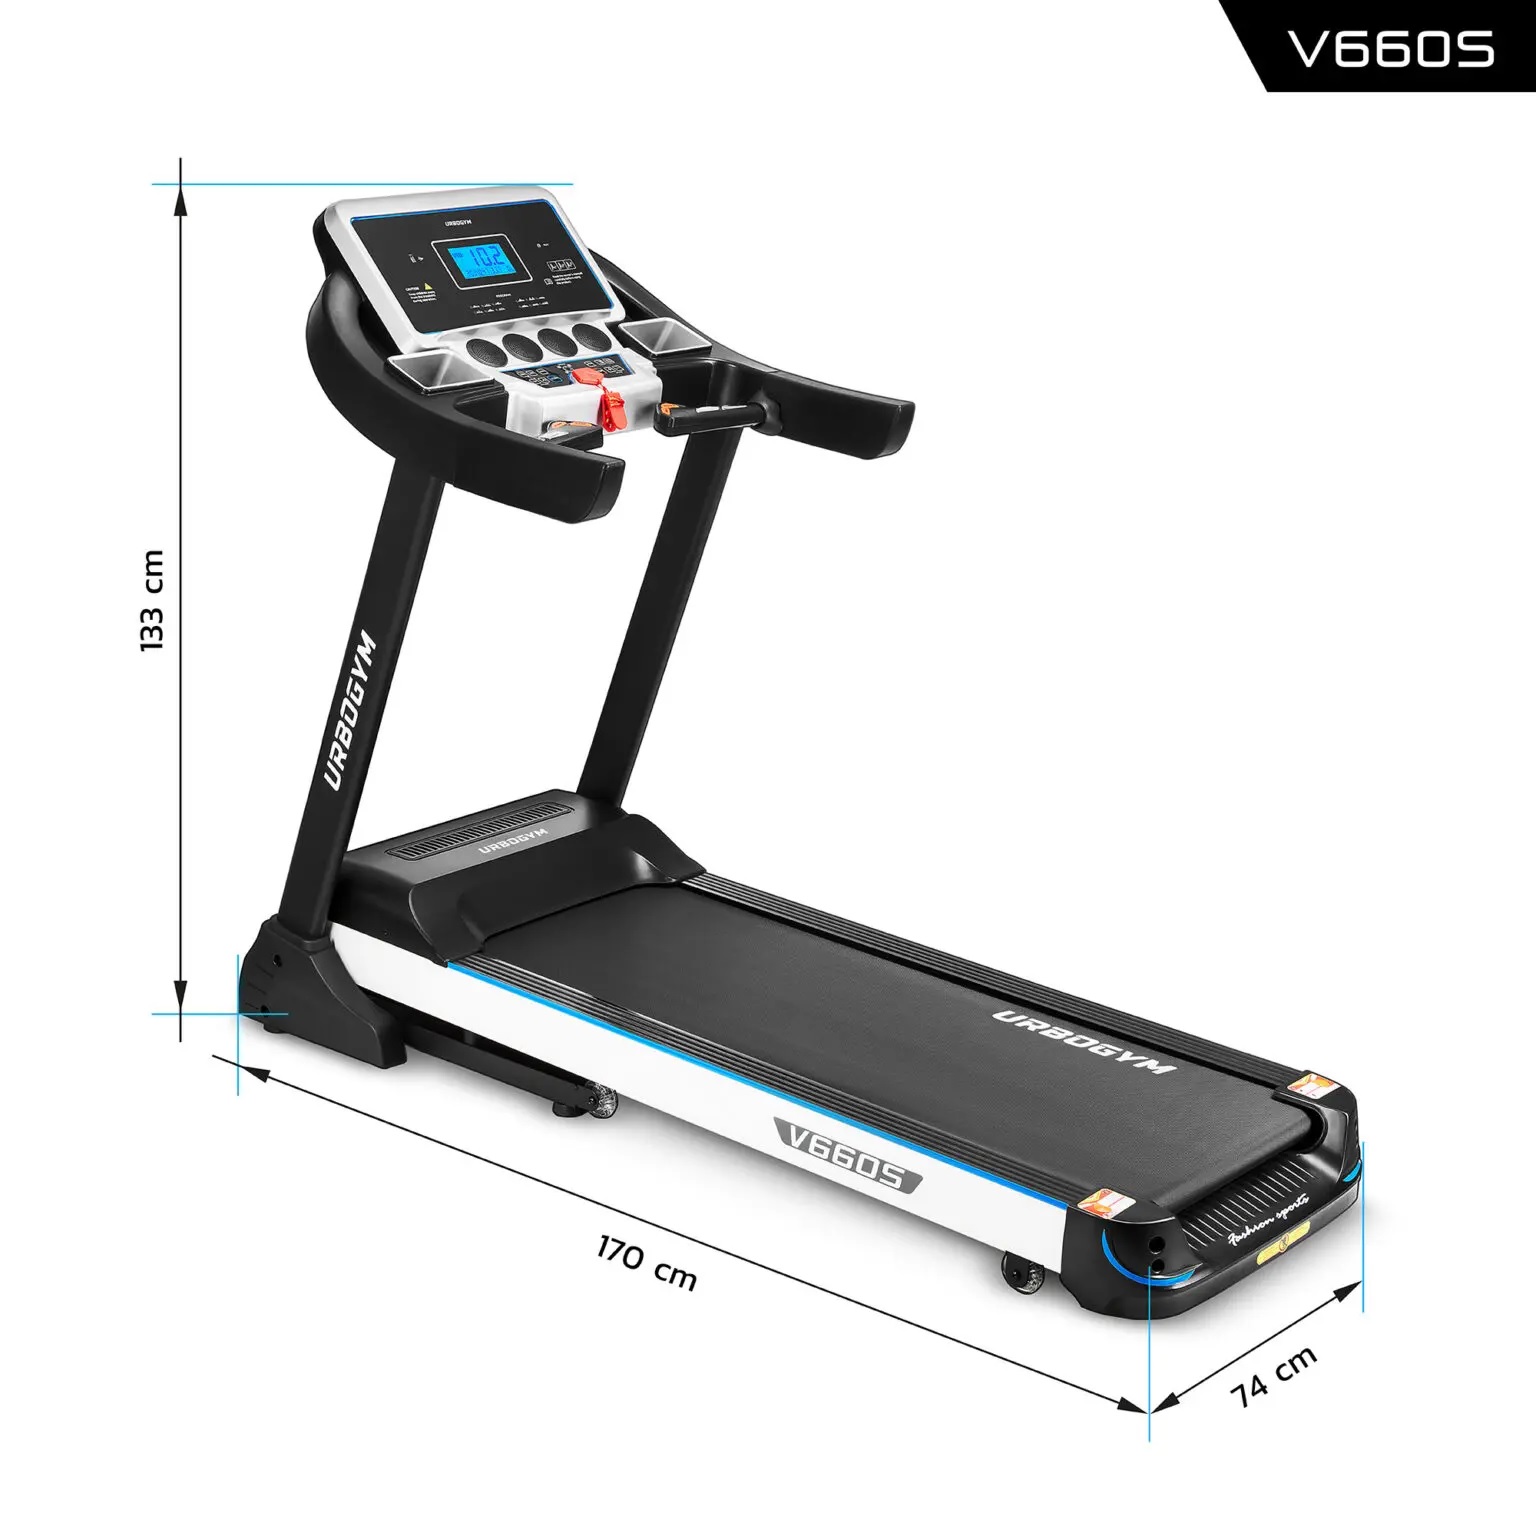 Treadmill V660s Urbogym